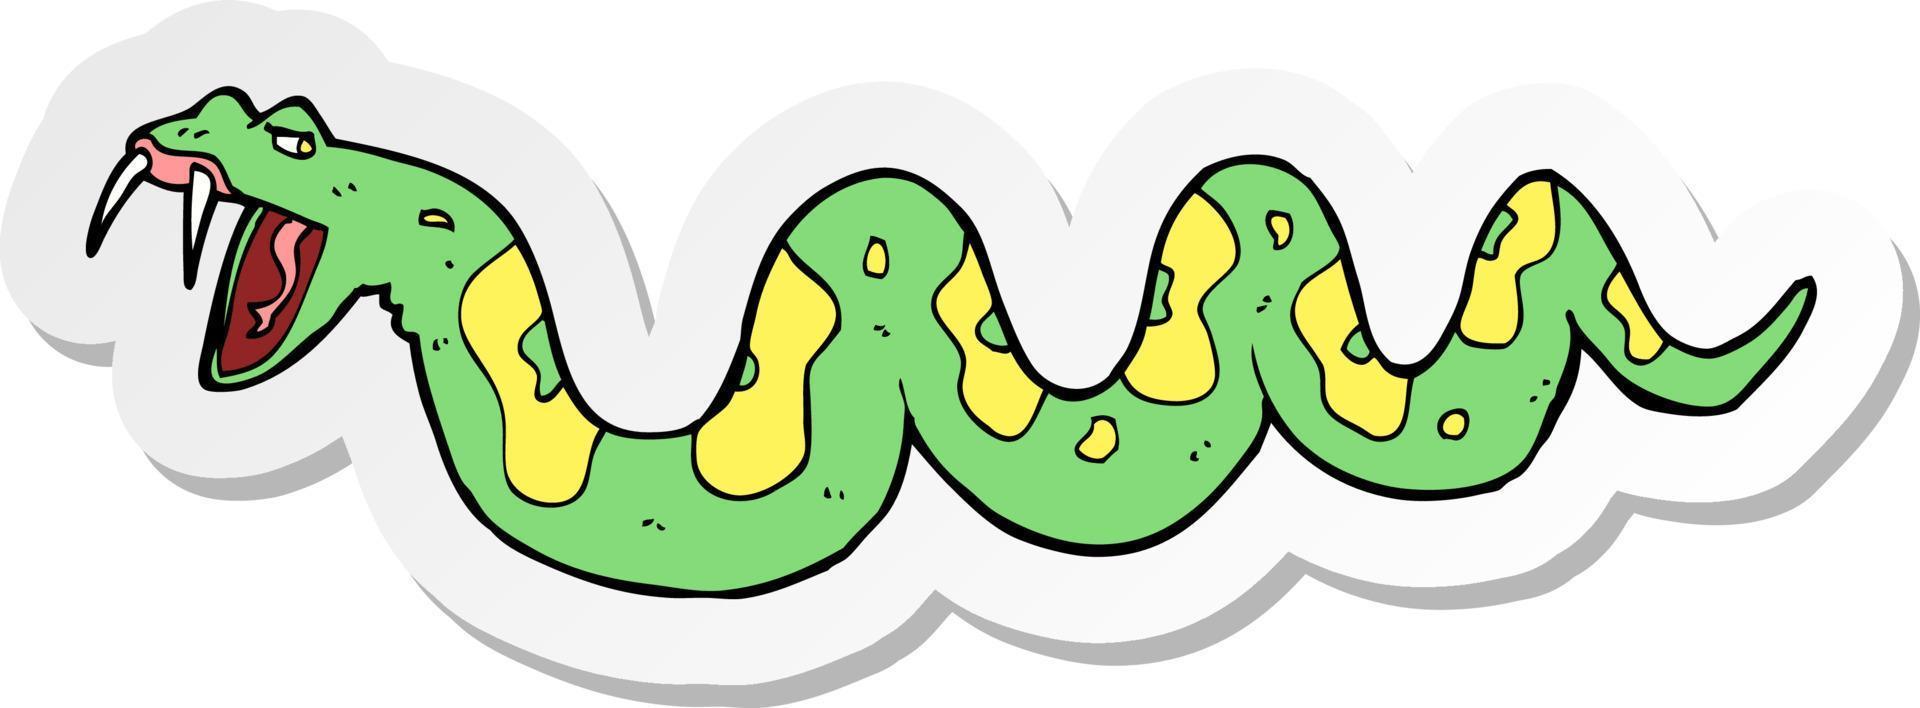 sticker van een cartoon giftige slang vector